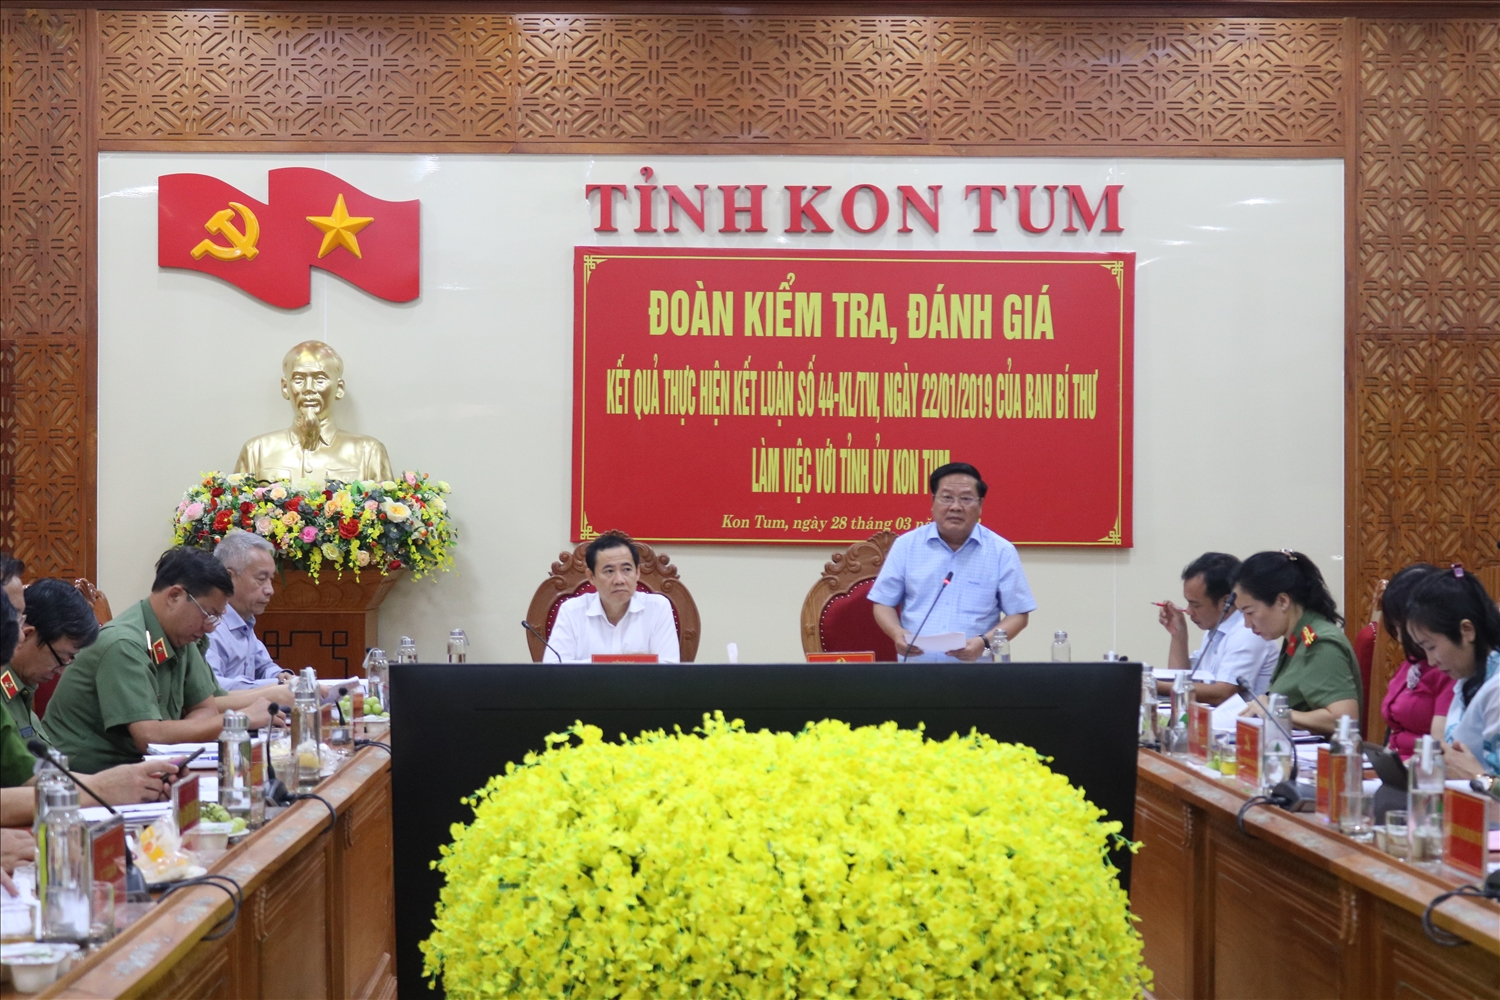 Ông Lê Ngọc Tuấn - Chủ tịch UBND tỉnh Kon Tum phát biểu tại buổi làm việc